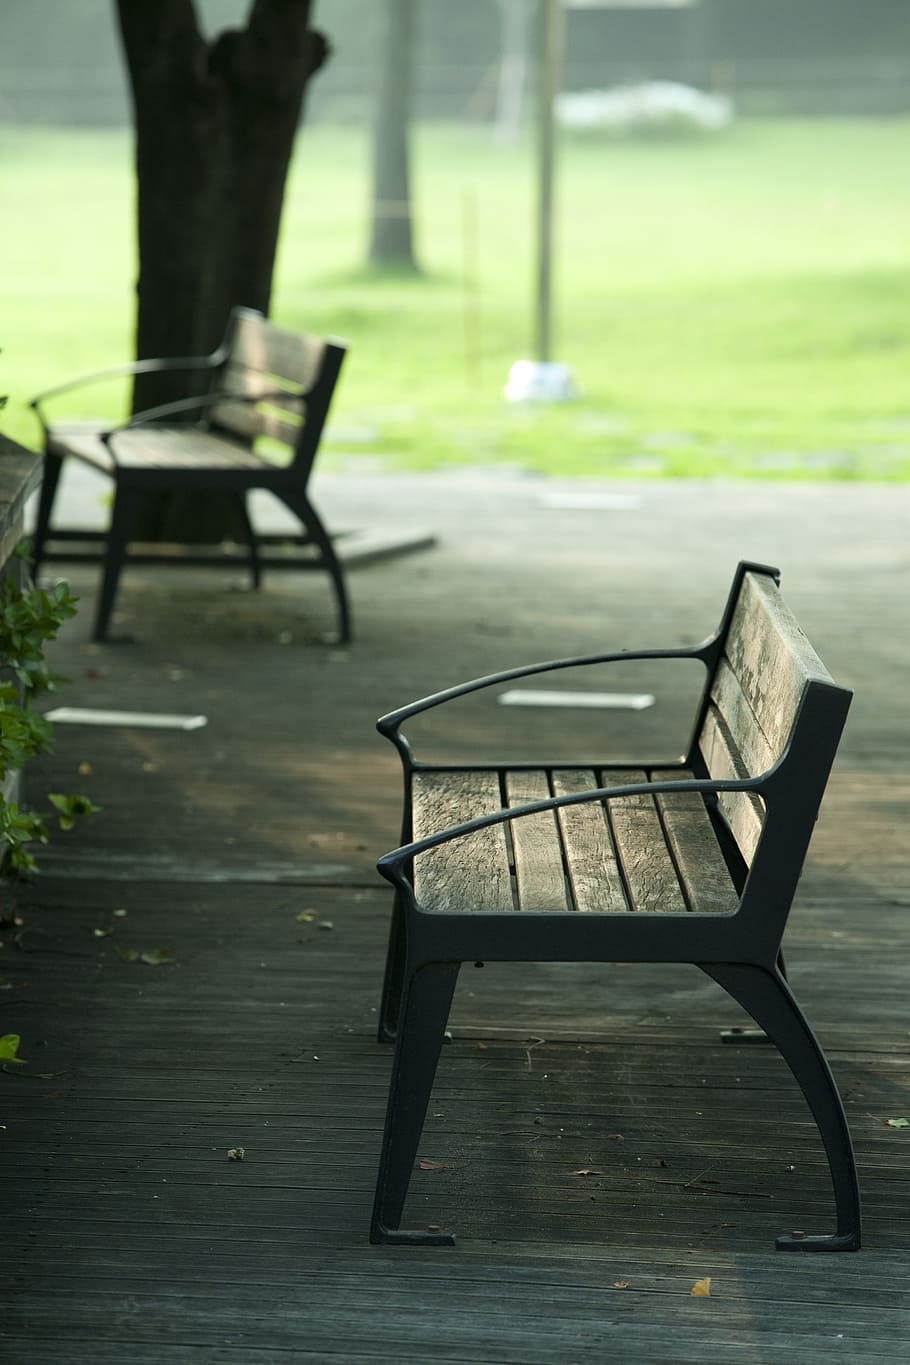 silla, banco, parque, descanso, naturaleza, caminar, jardín, banco de madera, asientos vacíos, percha